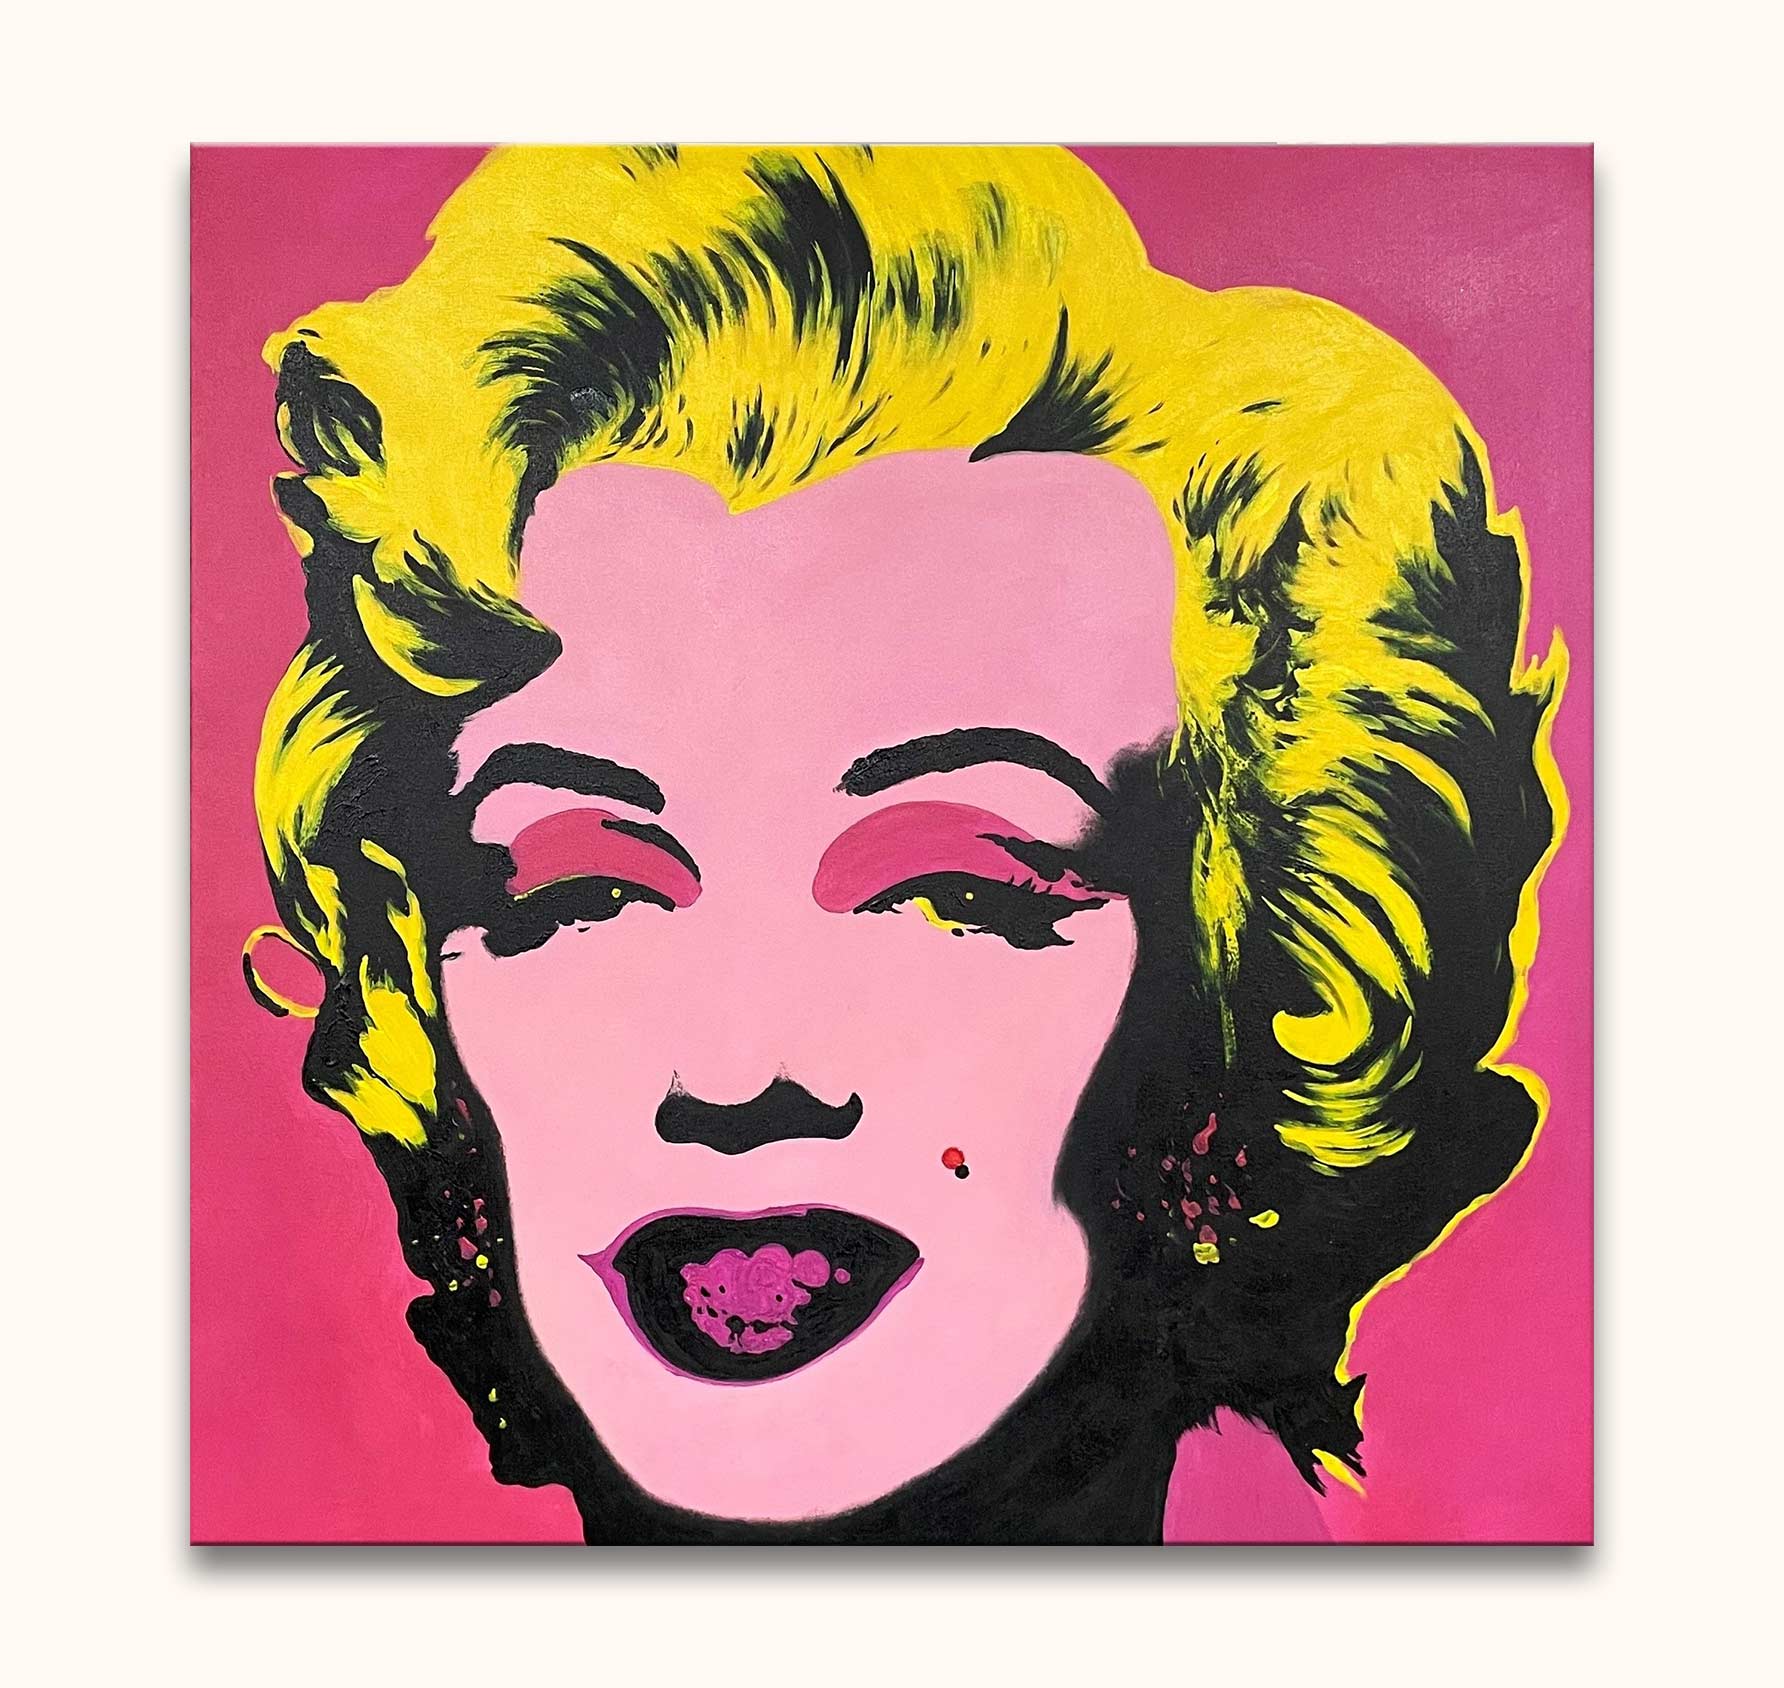 Diploma Ruim Genre Andy Warhol – Marylin Monroe – degrootmeesters.com